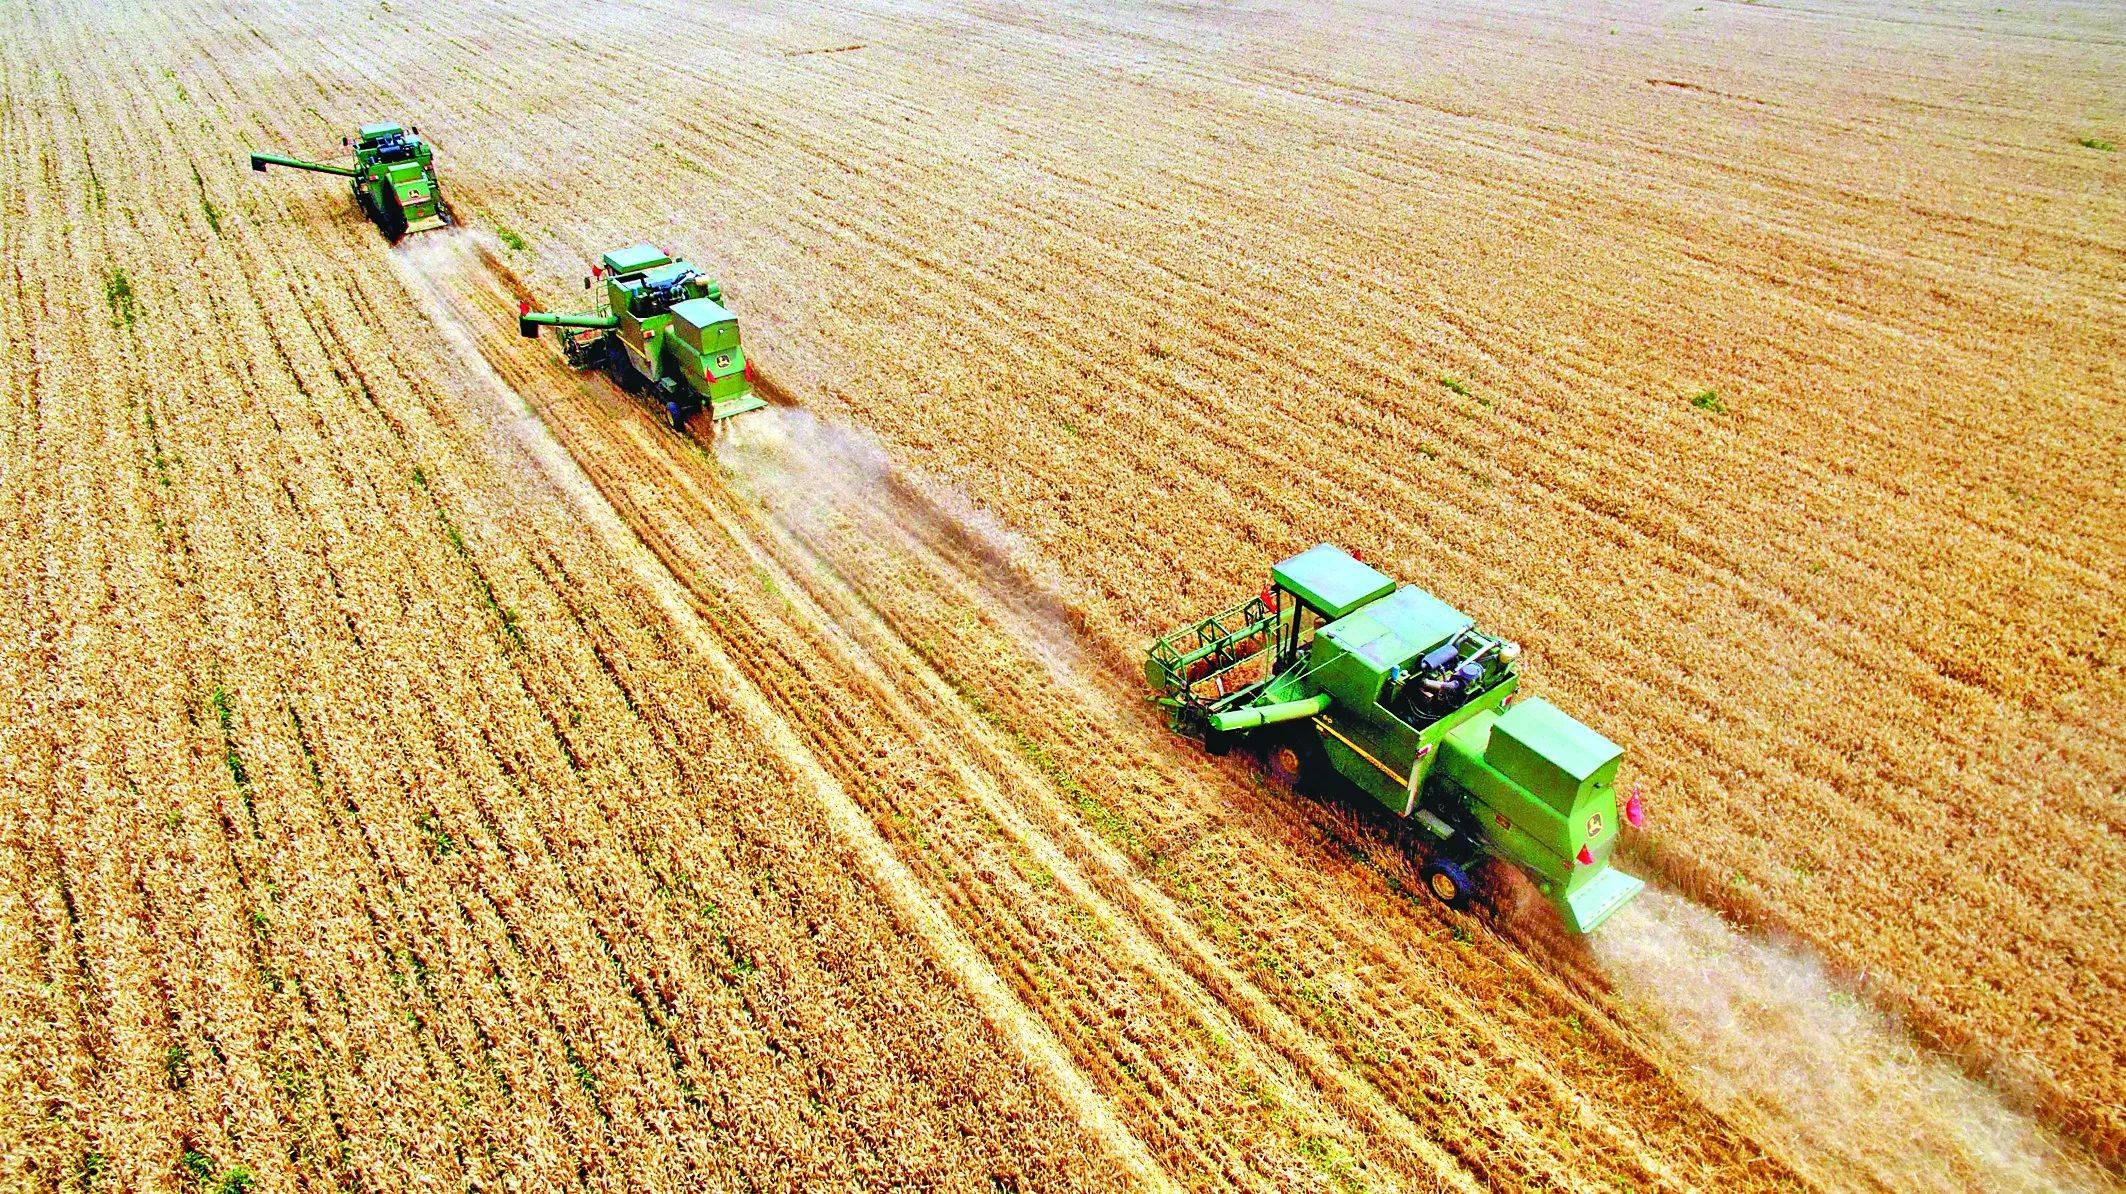 中国收获小麦256亿亩新闻的背后或是对动荡局势的充足准备